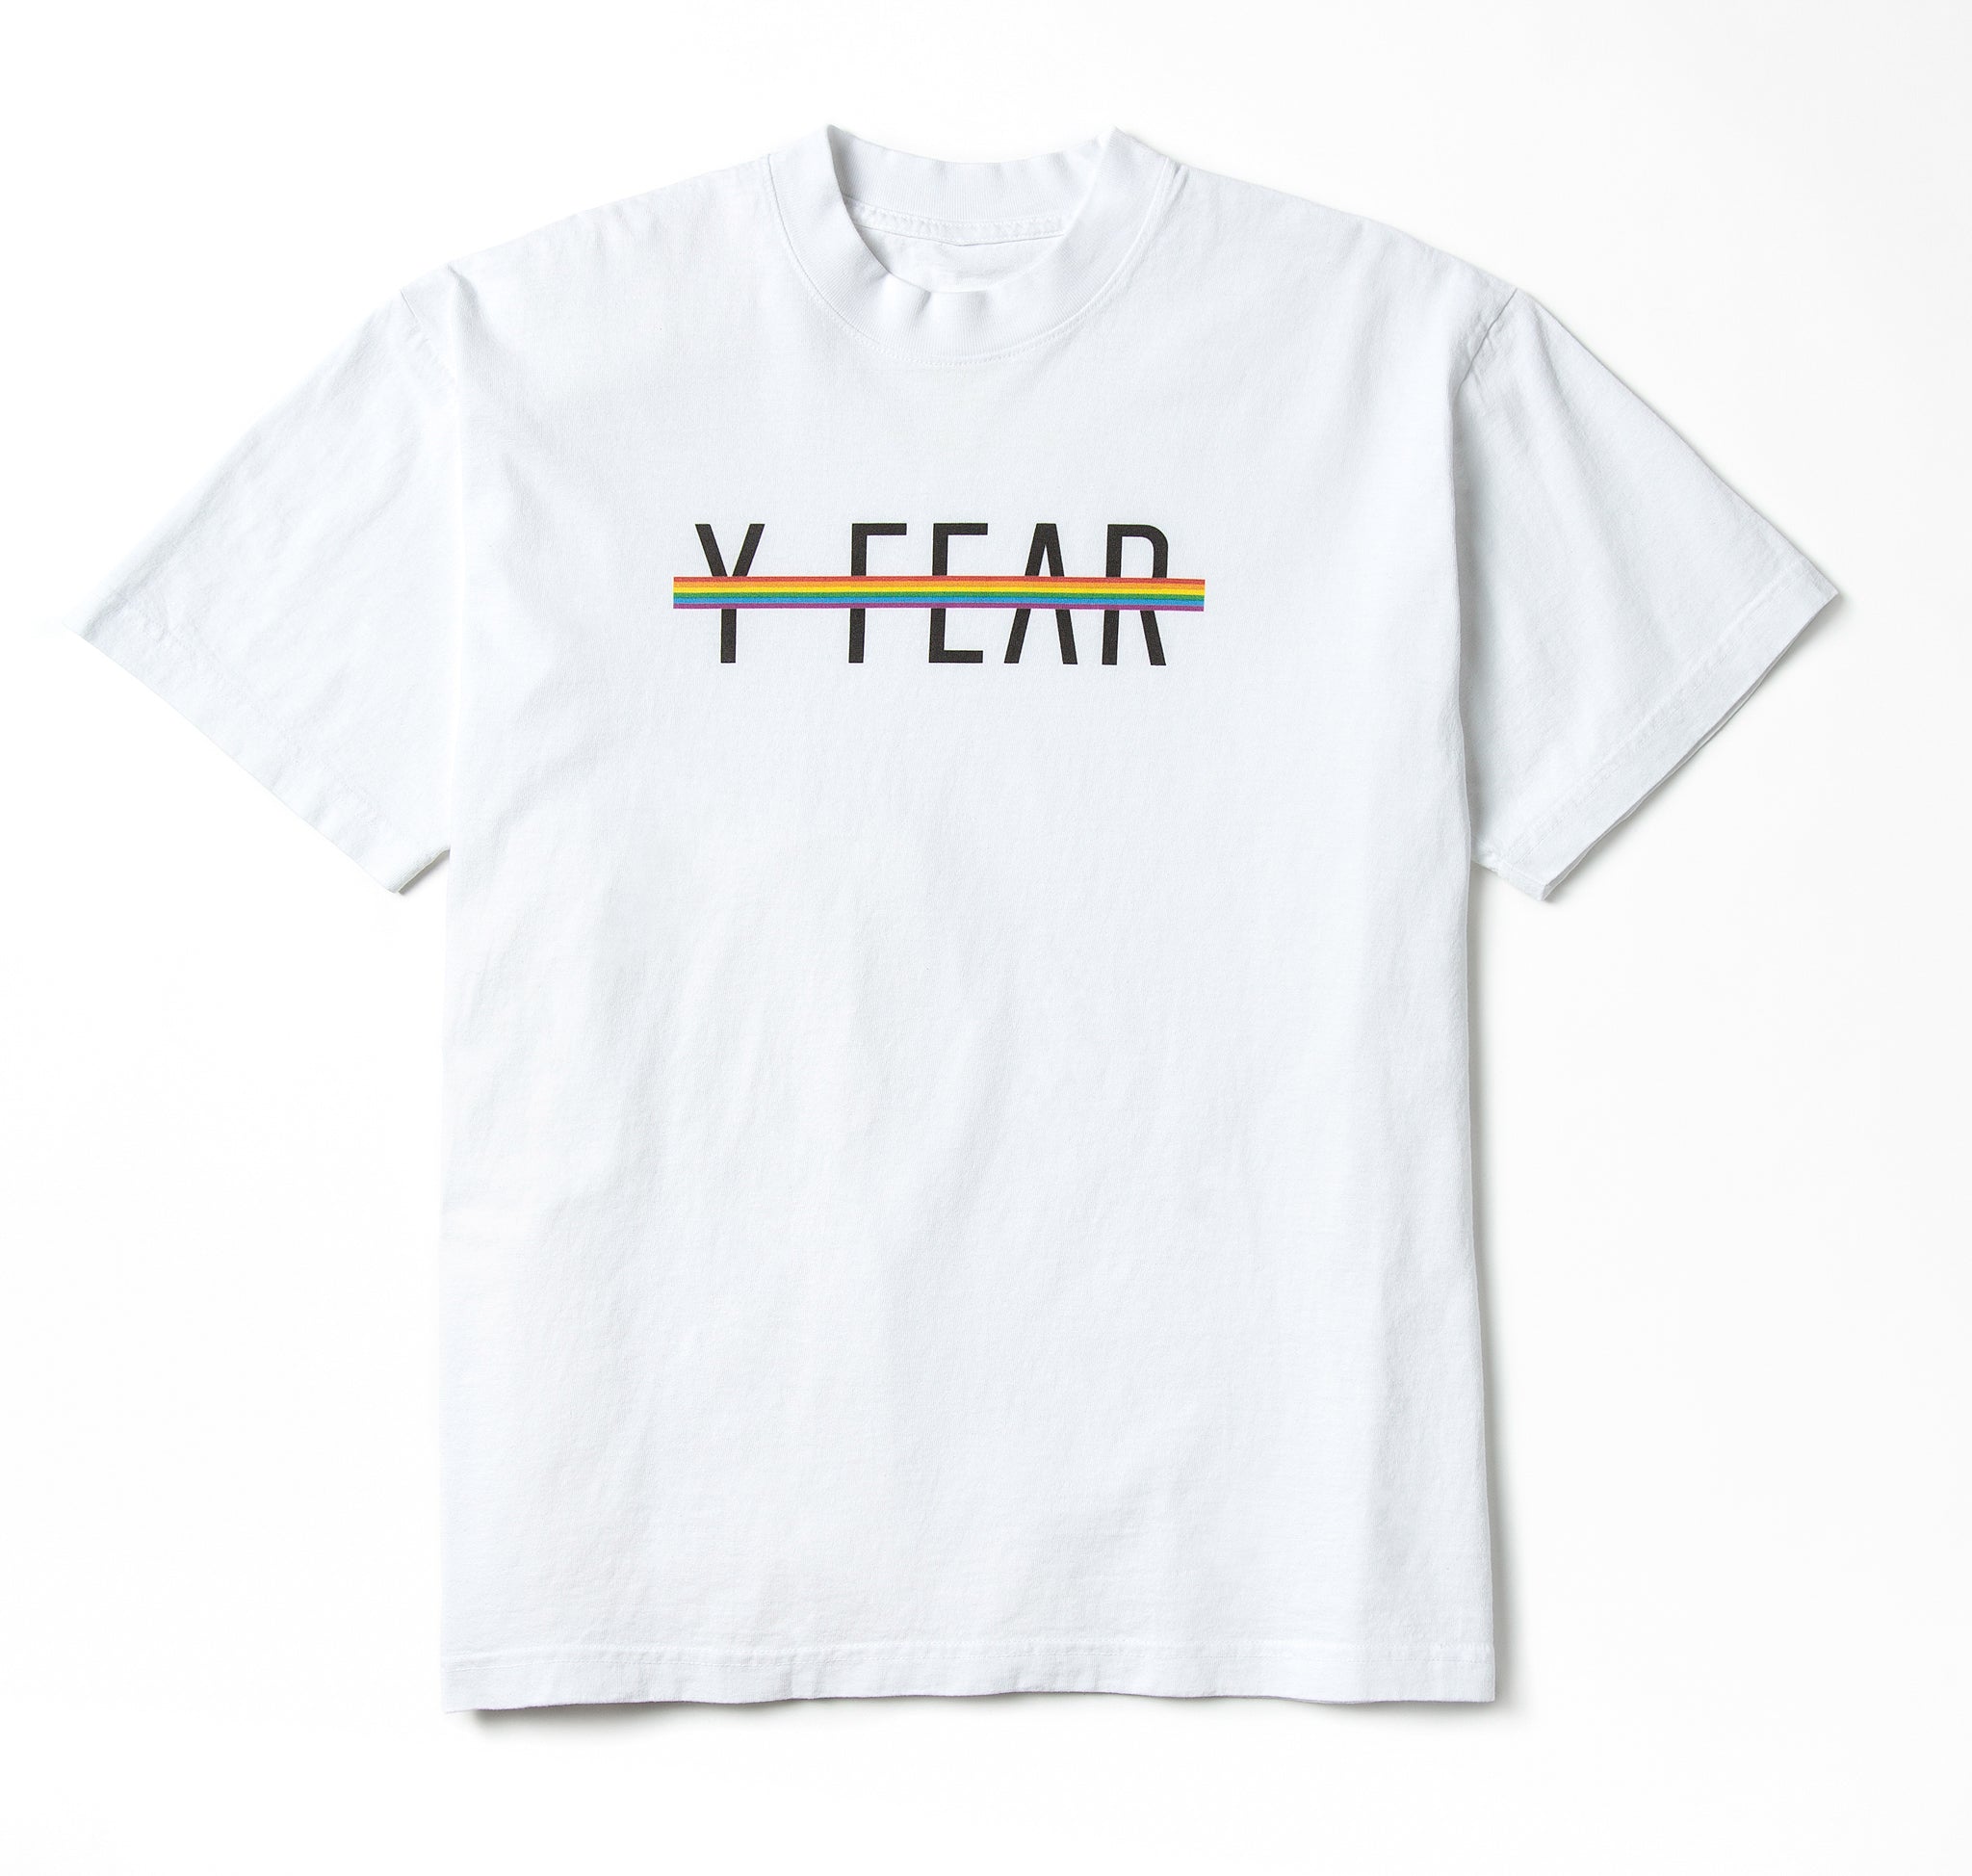 Y-FEAR-12.jpg